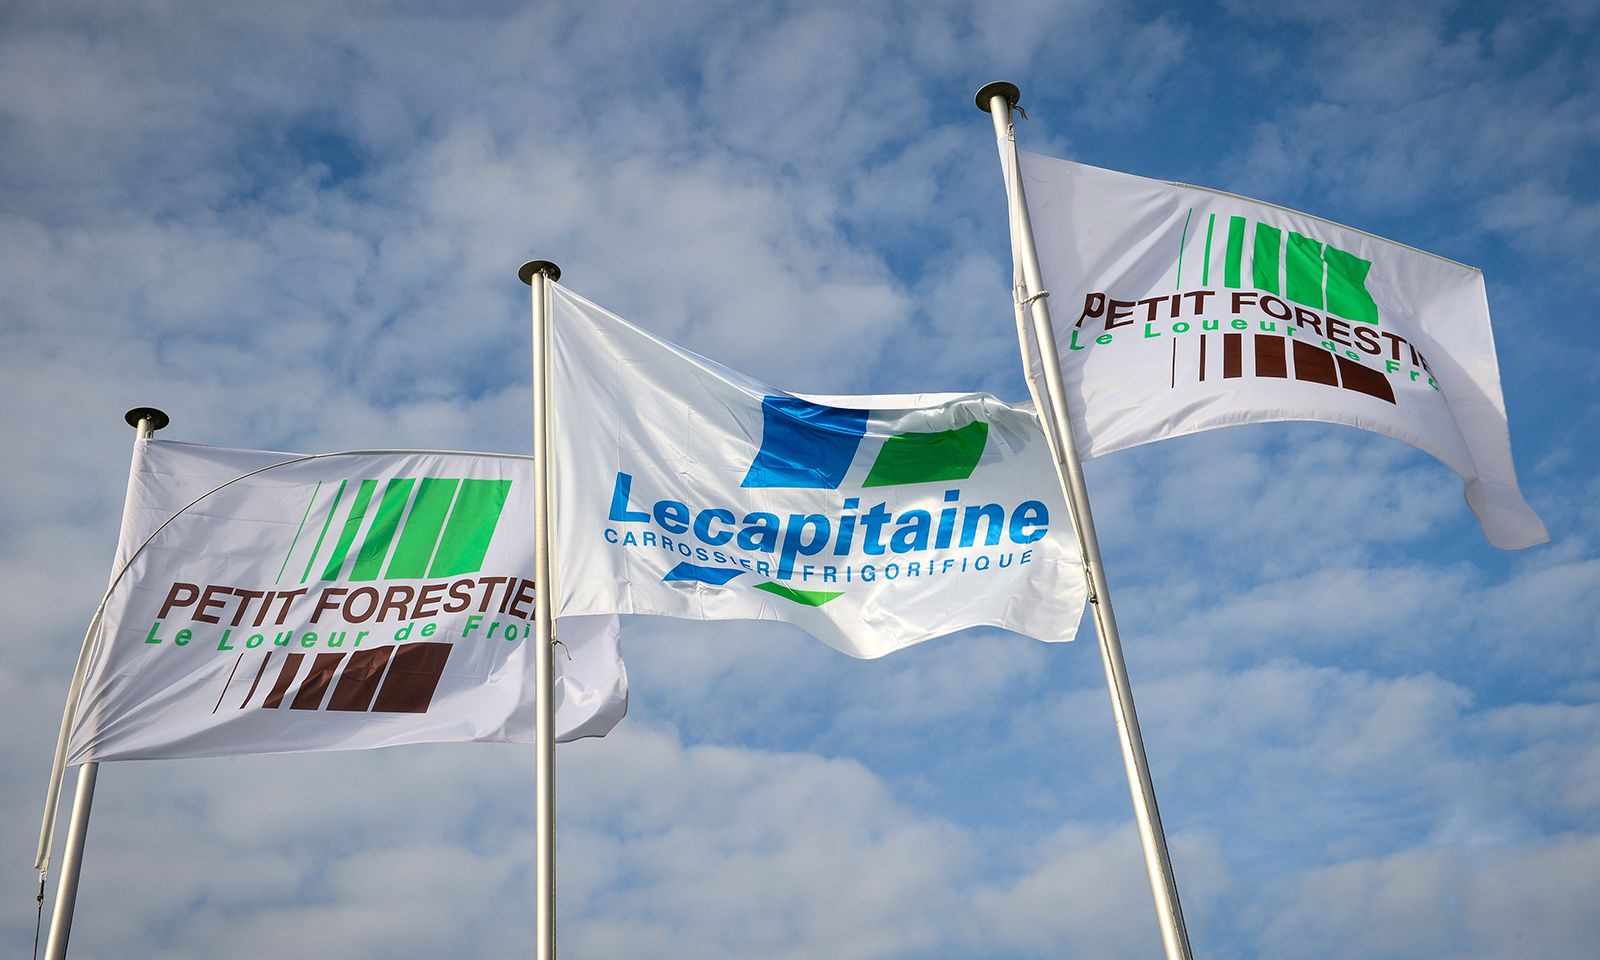 Drapeaux LeCapitaine et Petit Forestier